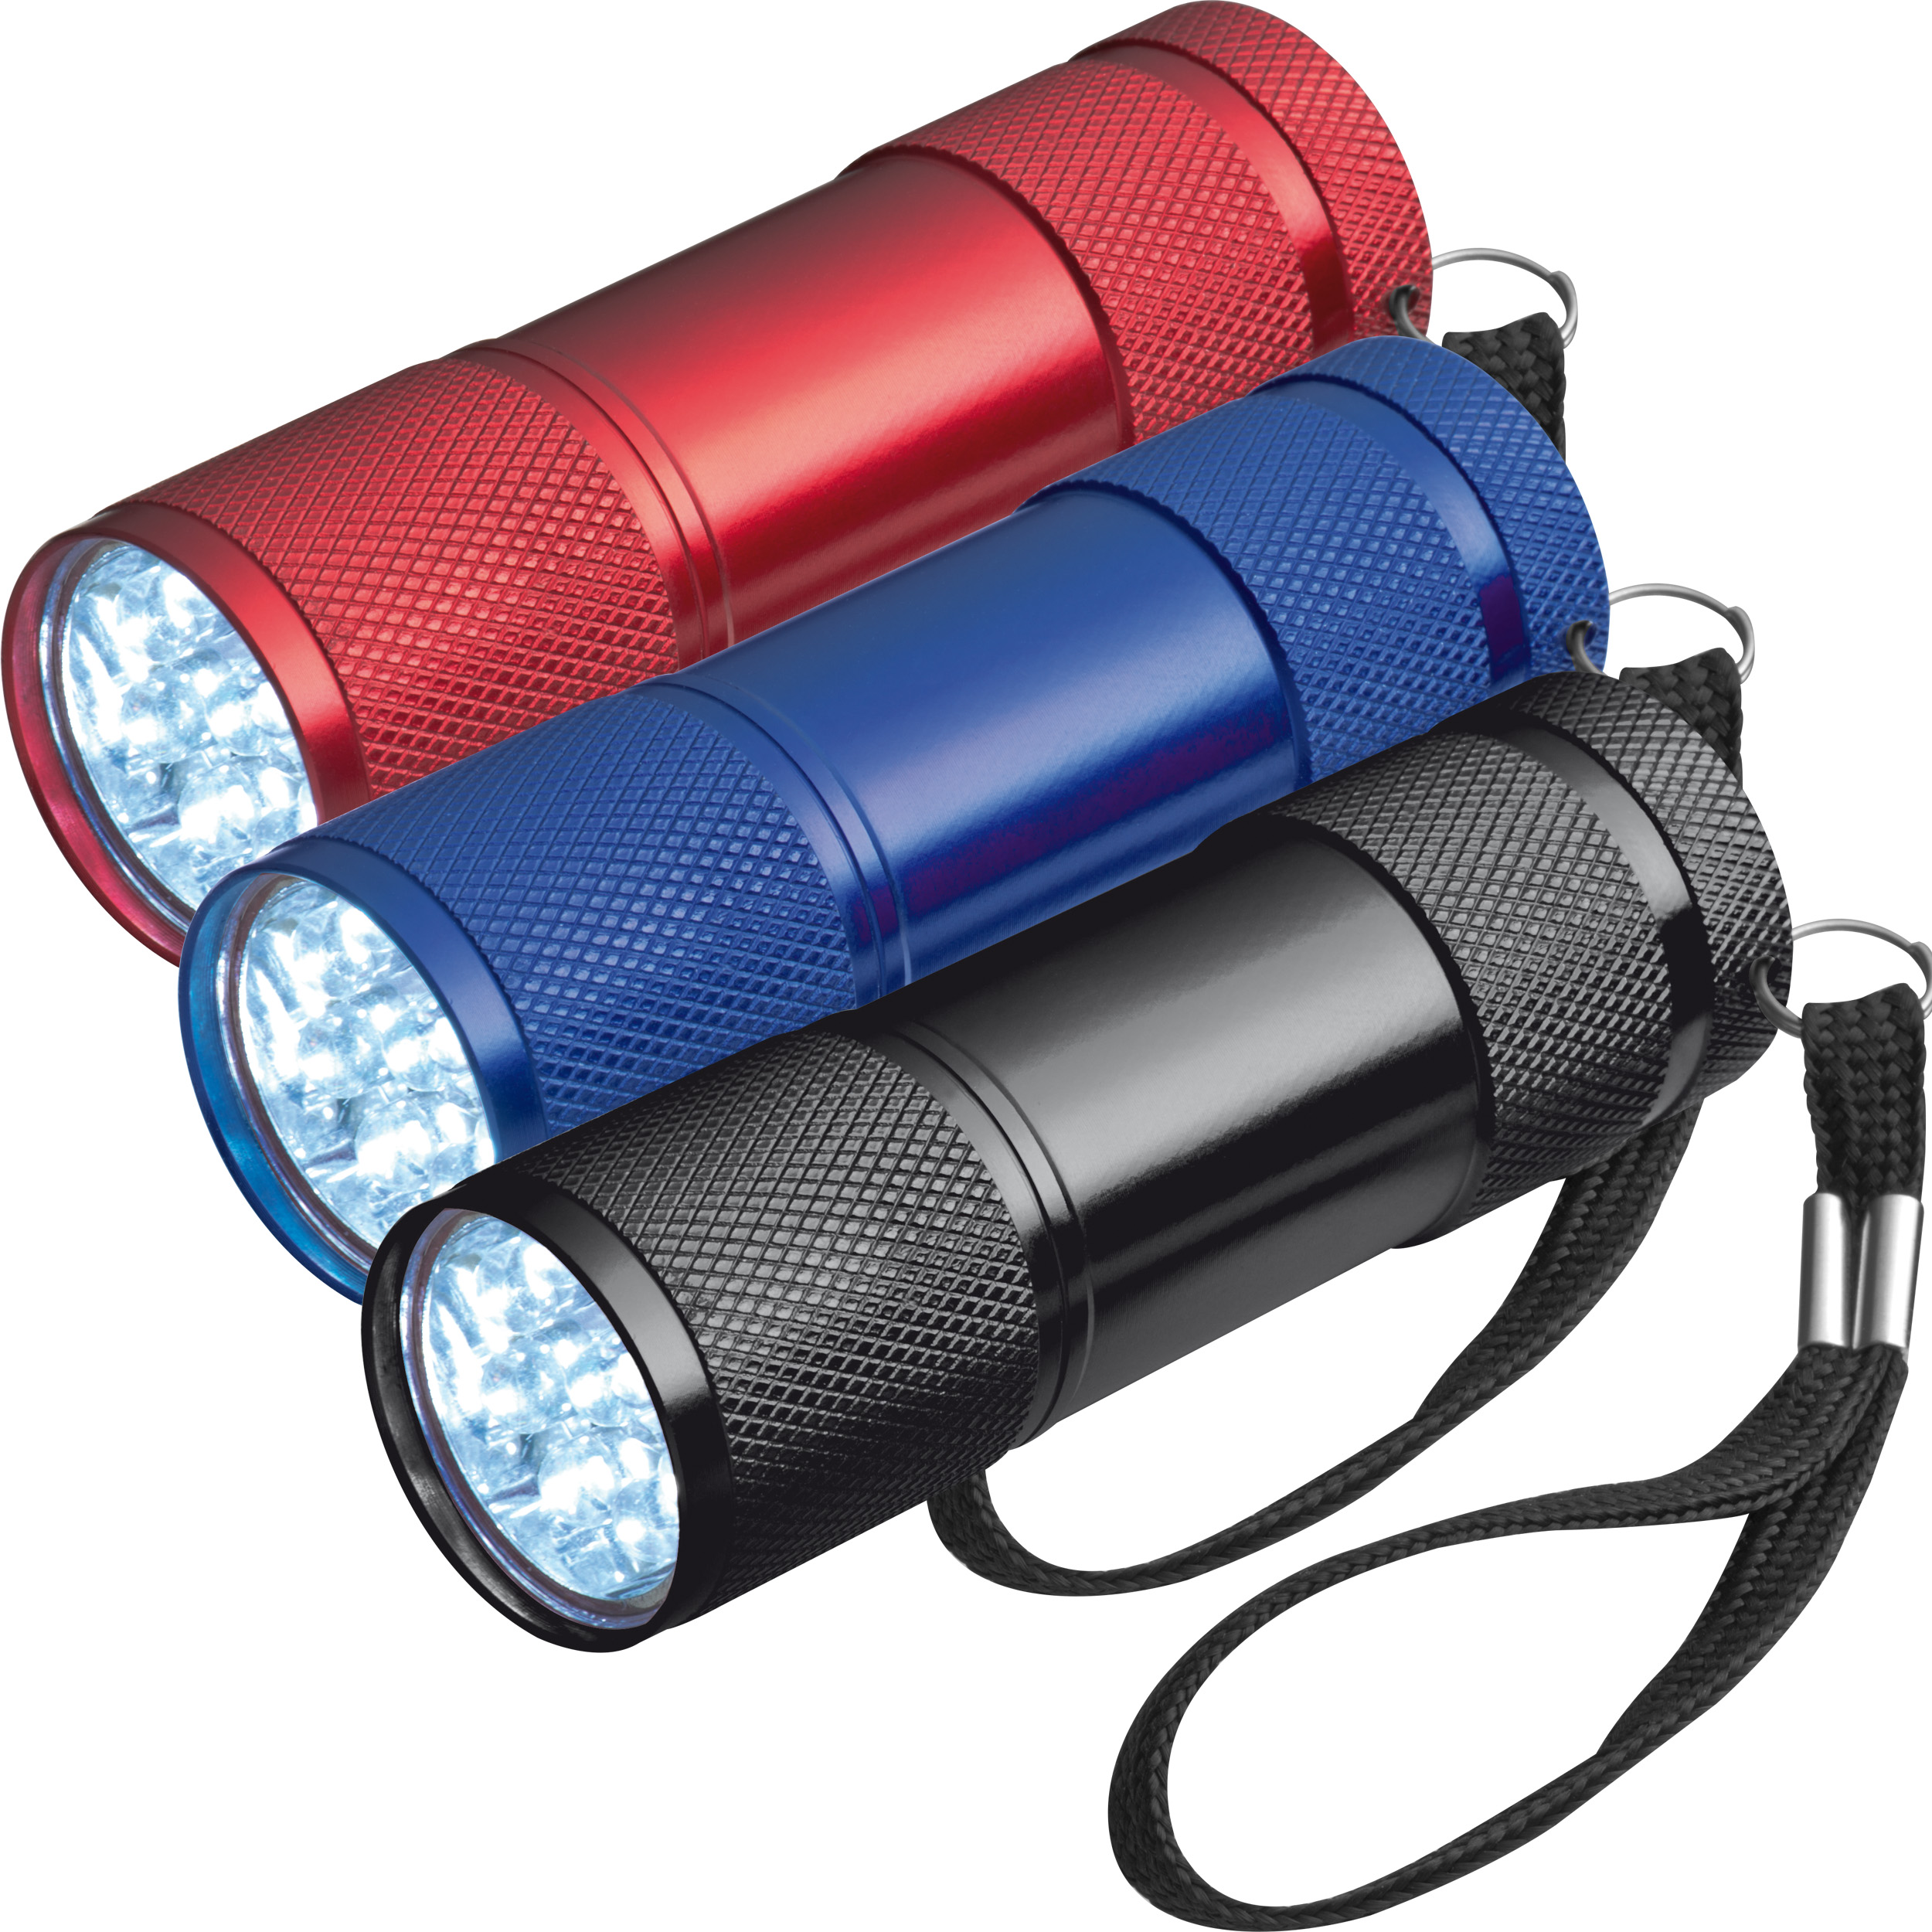 Taschenlampe aus Aluminium mit 9 LEDs, inkl. Batterien in einer Box